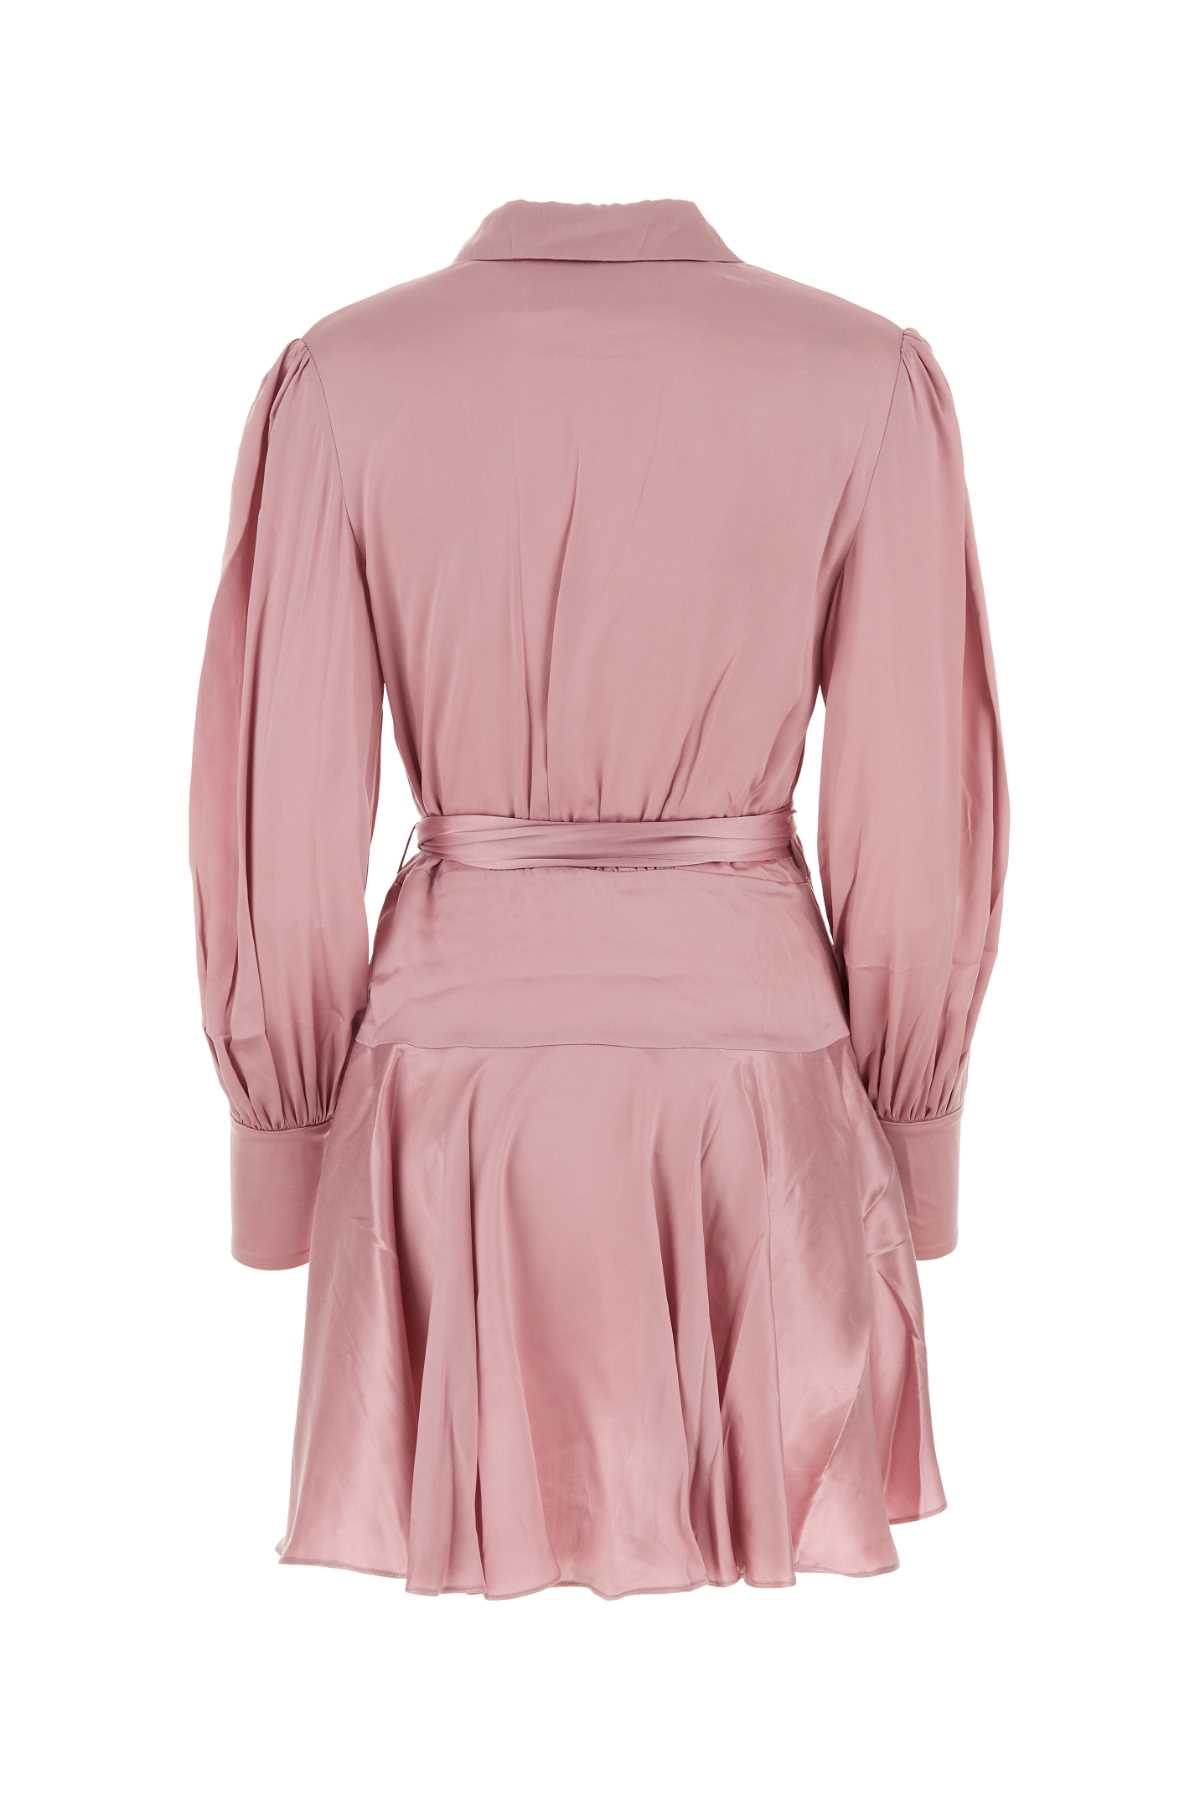 Zimmermann Pink Silk Dress